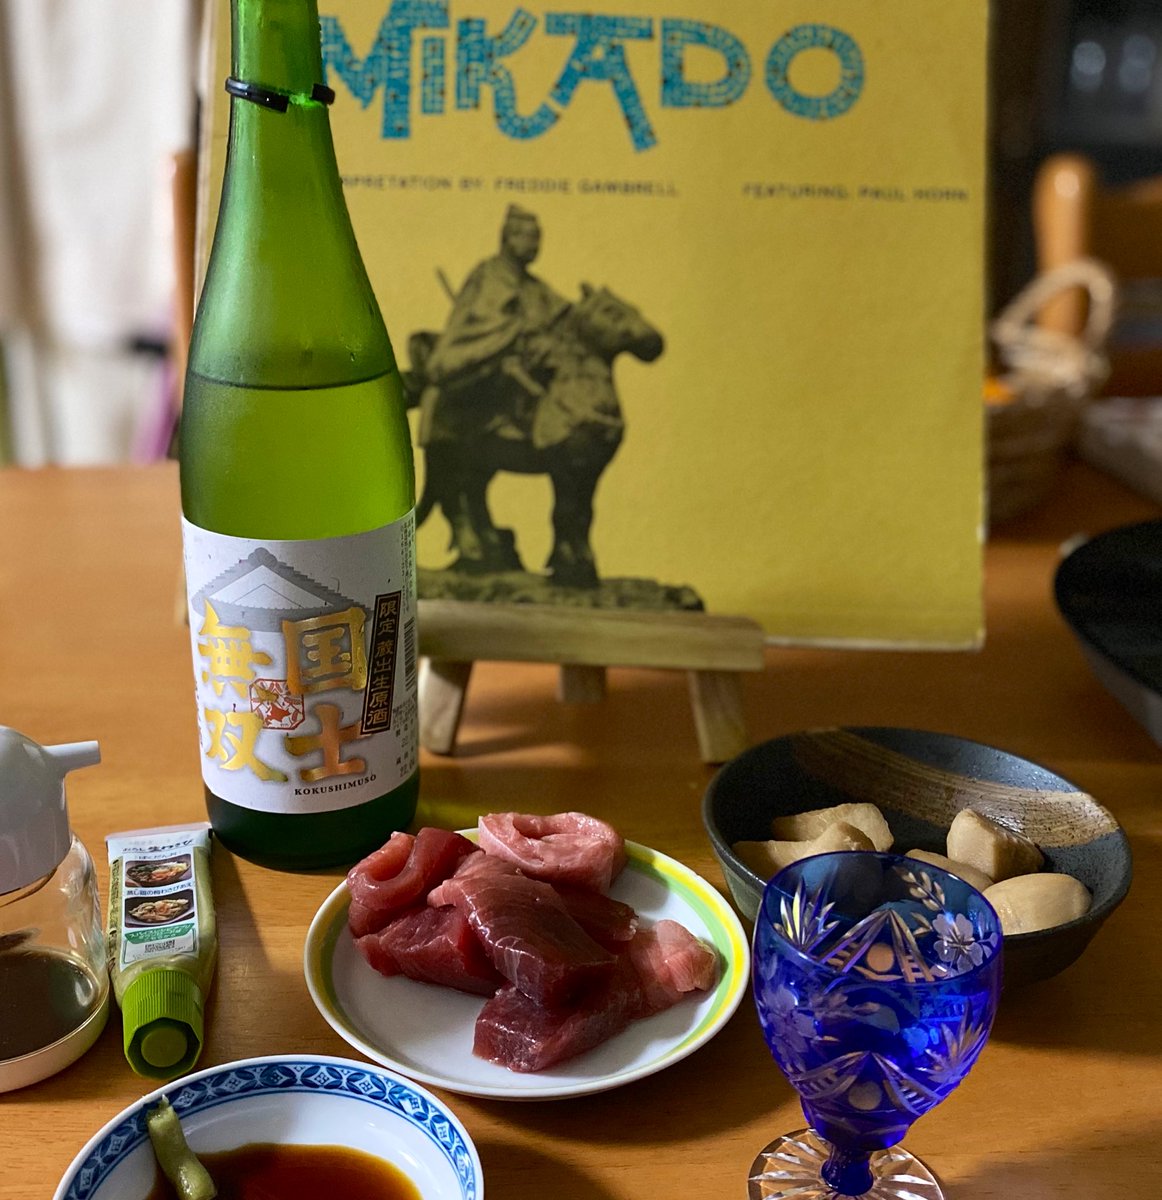 test ツイッターメディア - 普段日本酒を飲まないけど、たまには。
北海道に行った際に購入した、国士無双 蔵出生原酒を。 https://t.co/jGTP3De68G